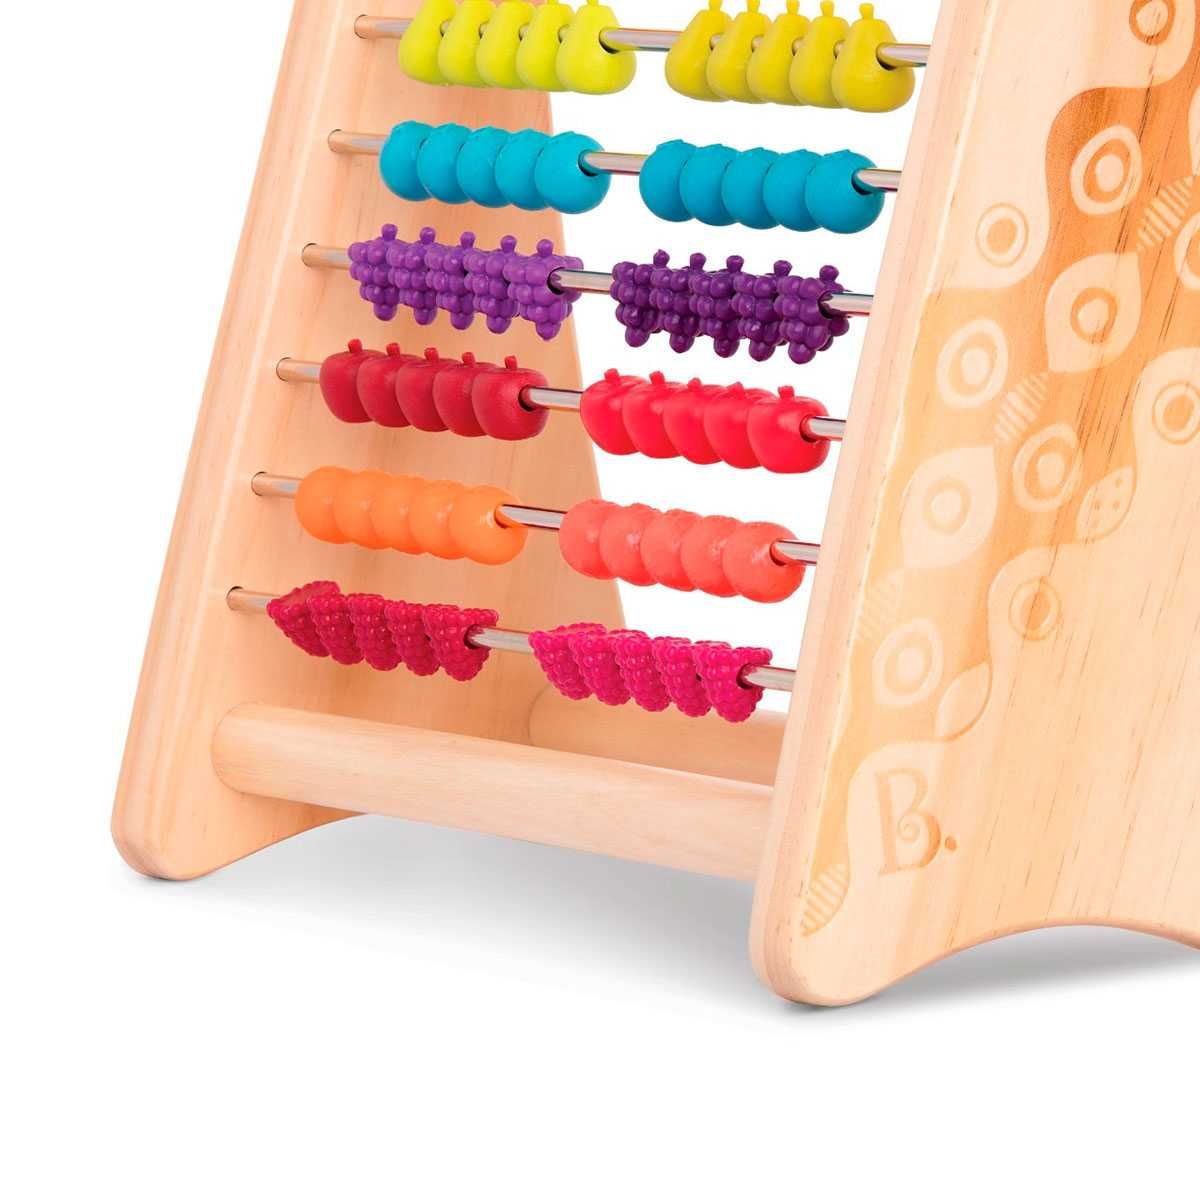 Развивающая деревянная игрушка-счеты Тутти-Фрутти BX1778Z Battat